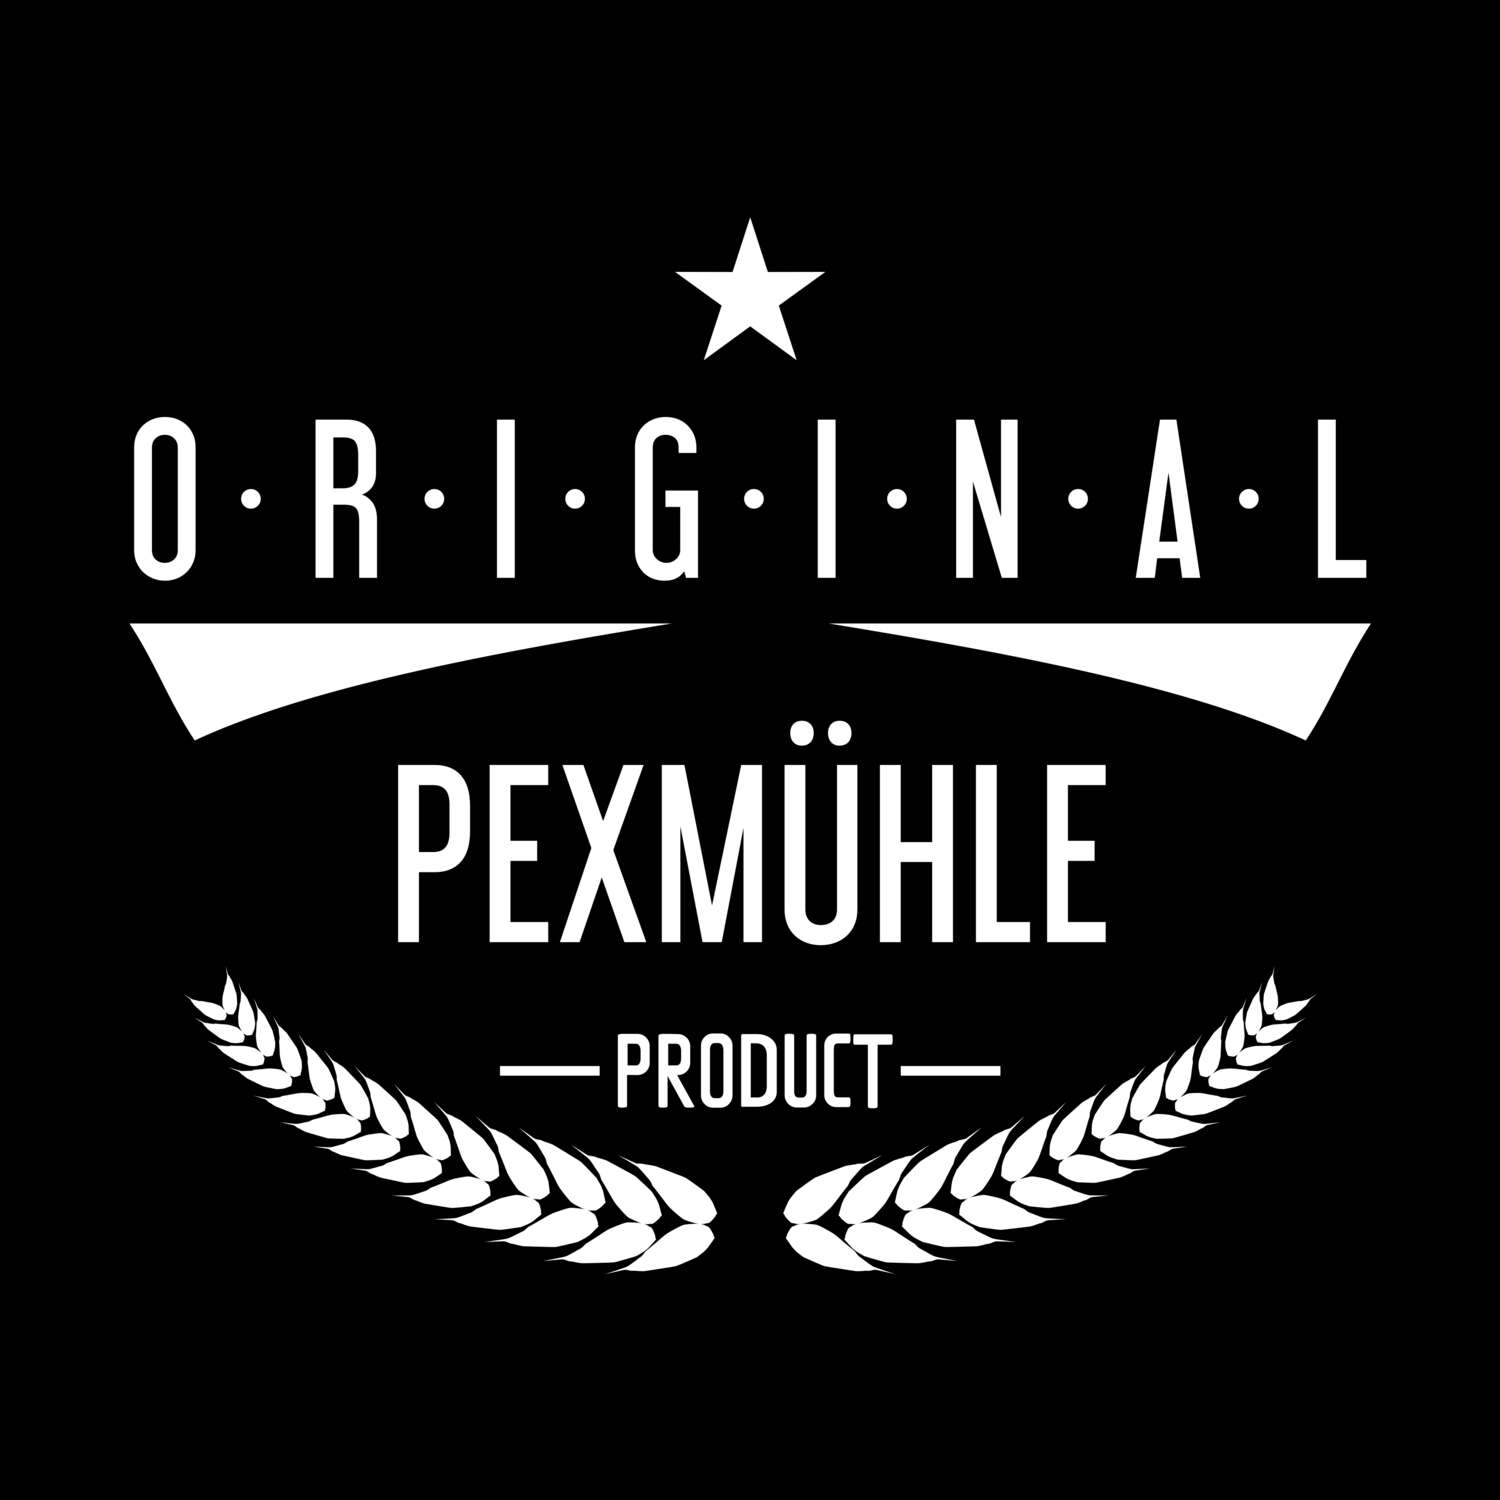 Pexmühle T-Shirt »Original Product«